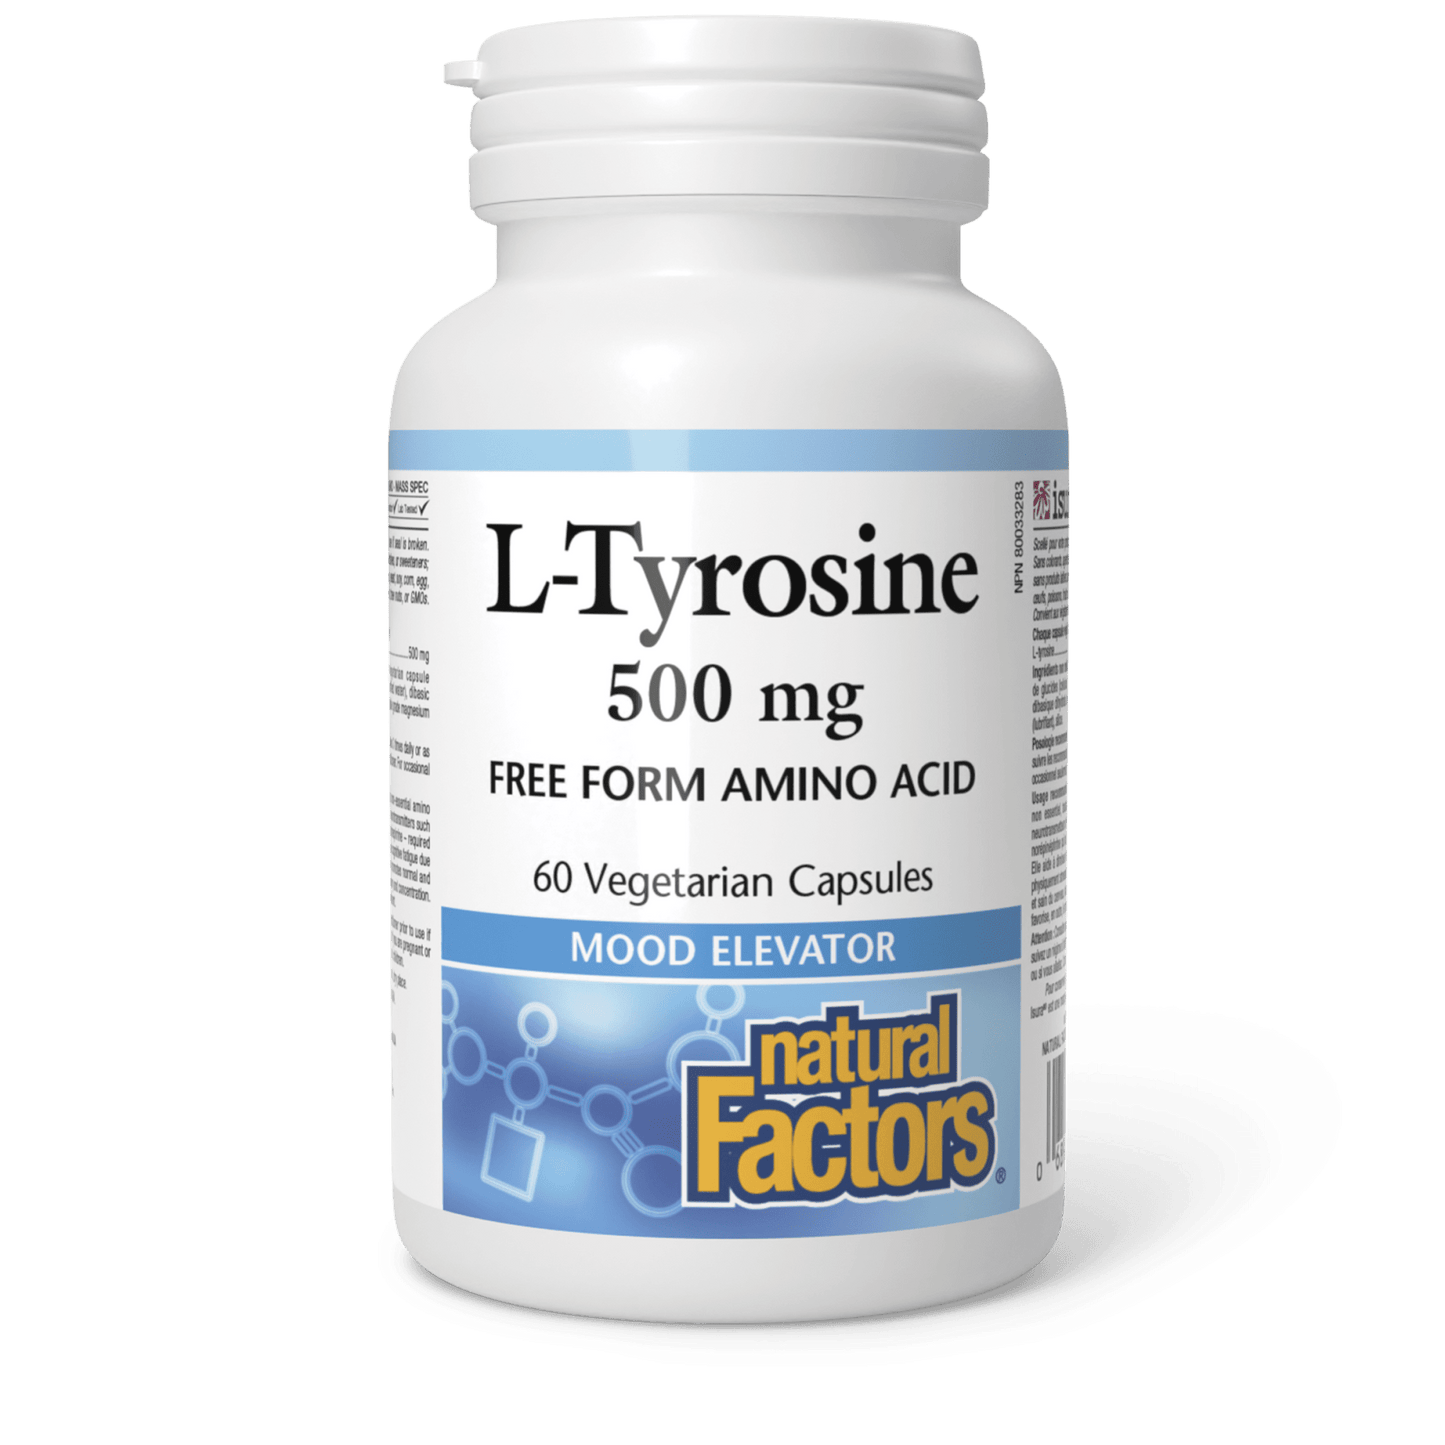 L-Tyrosine 500 mg, Natural Factors|v|image|2803